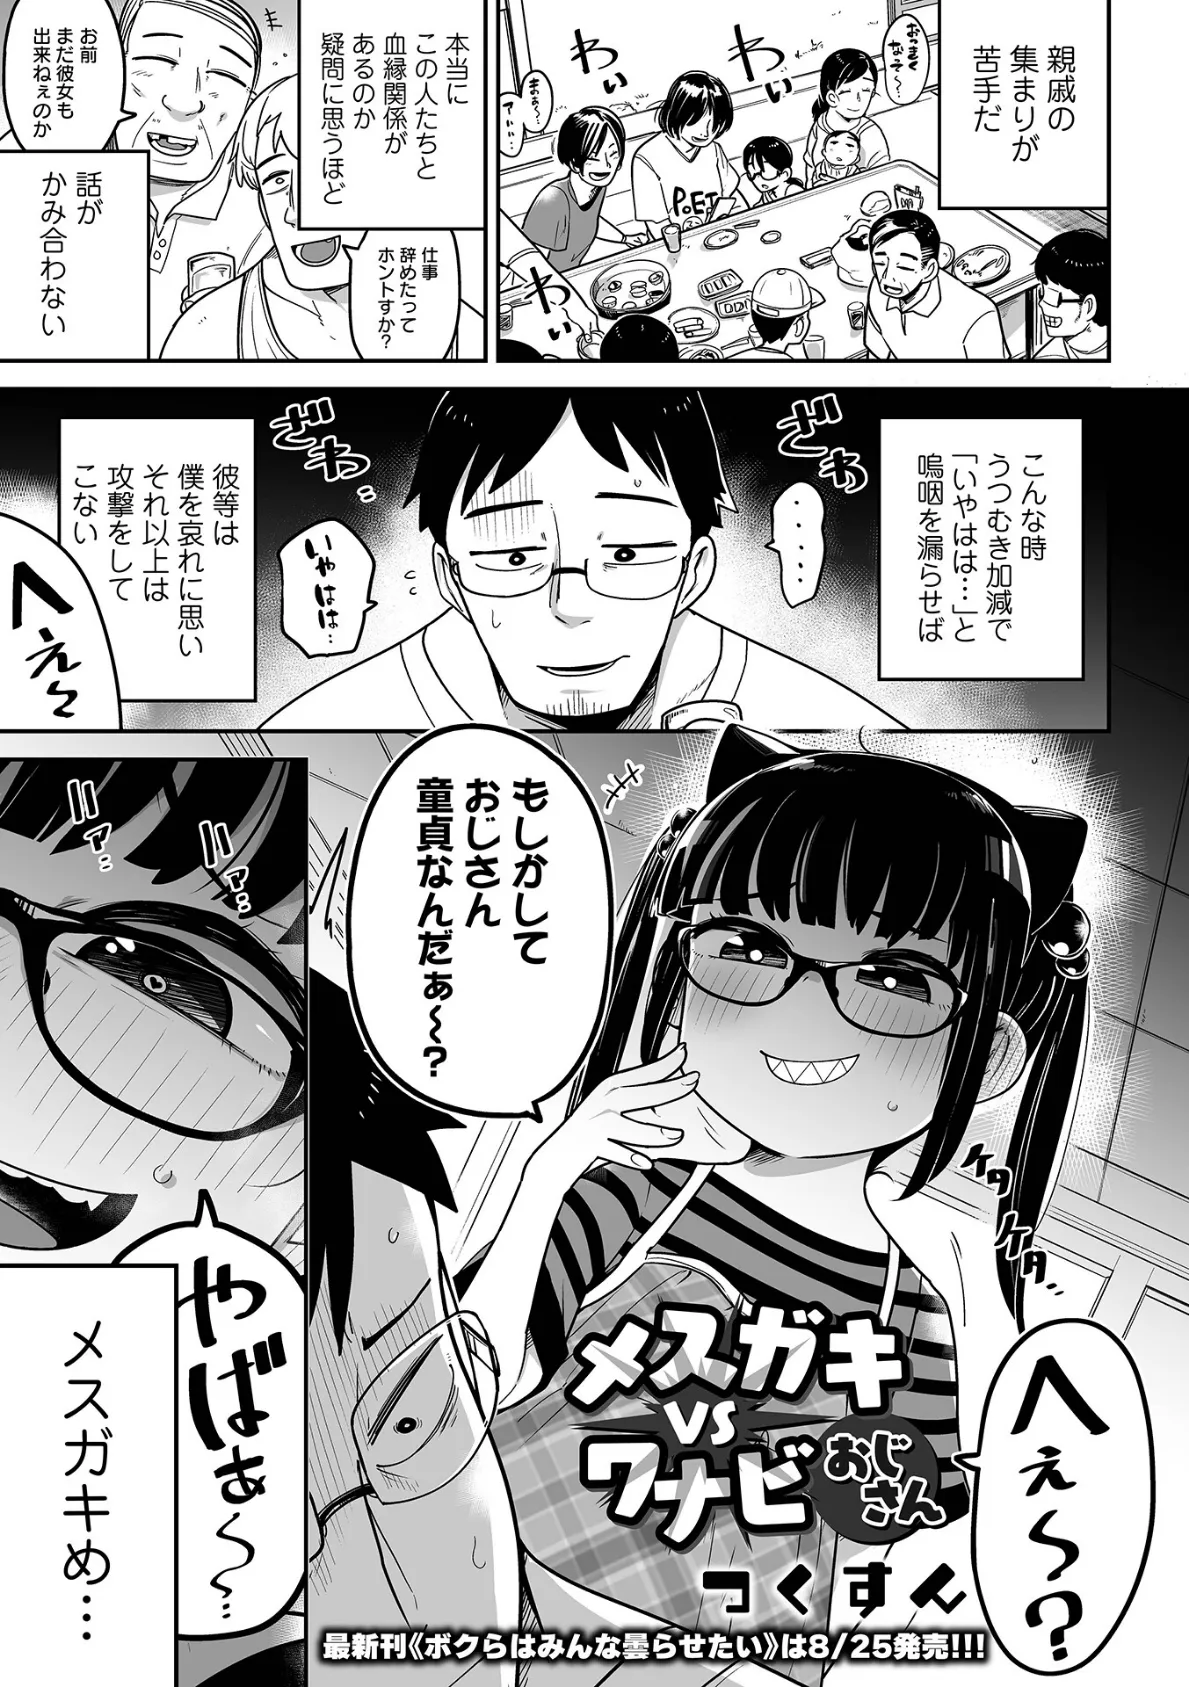 メスガキ vs ワナビおじさん 1ページ